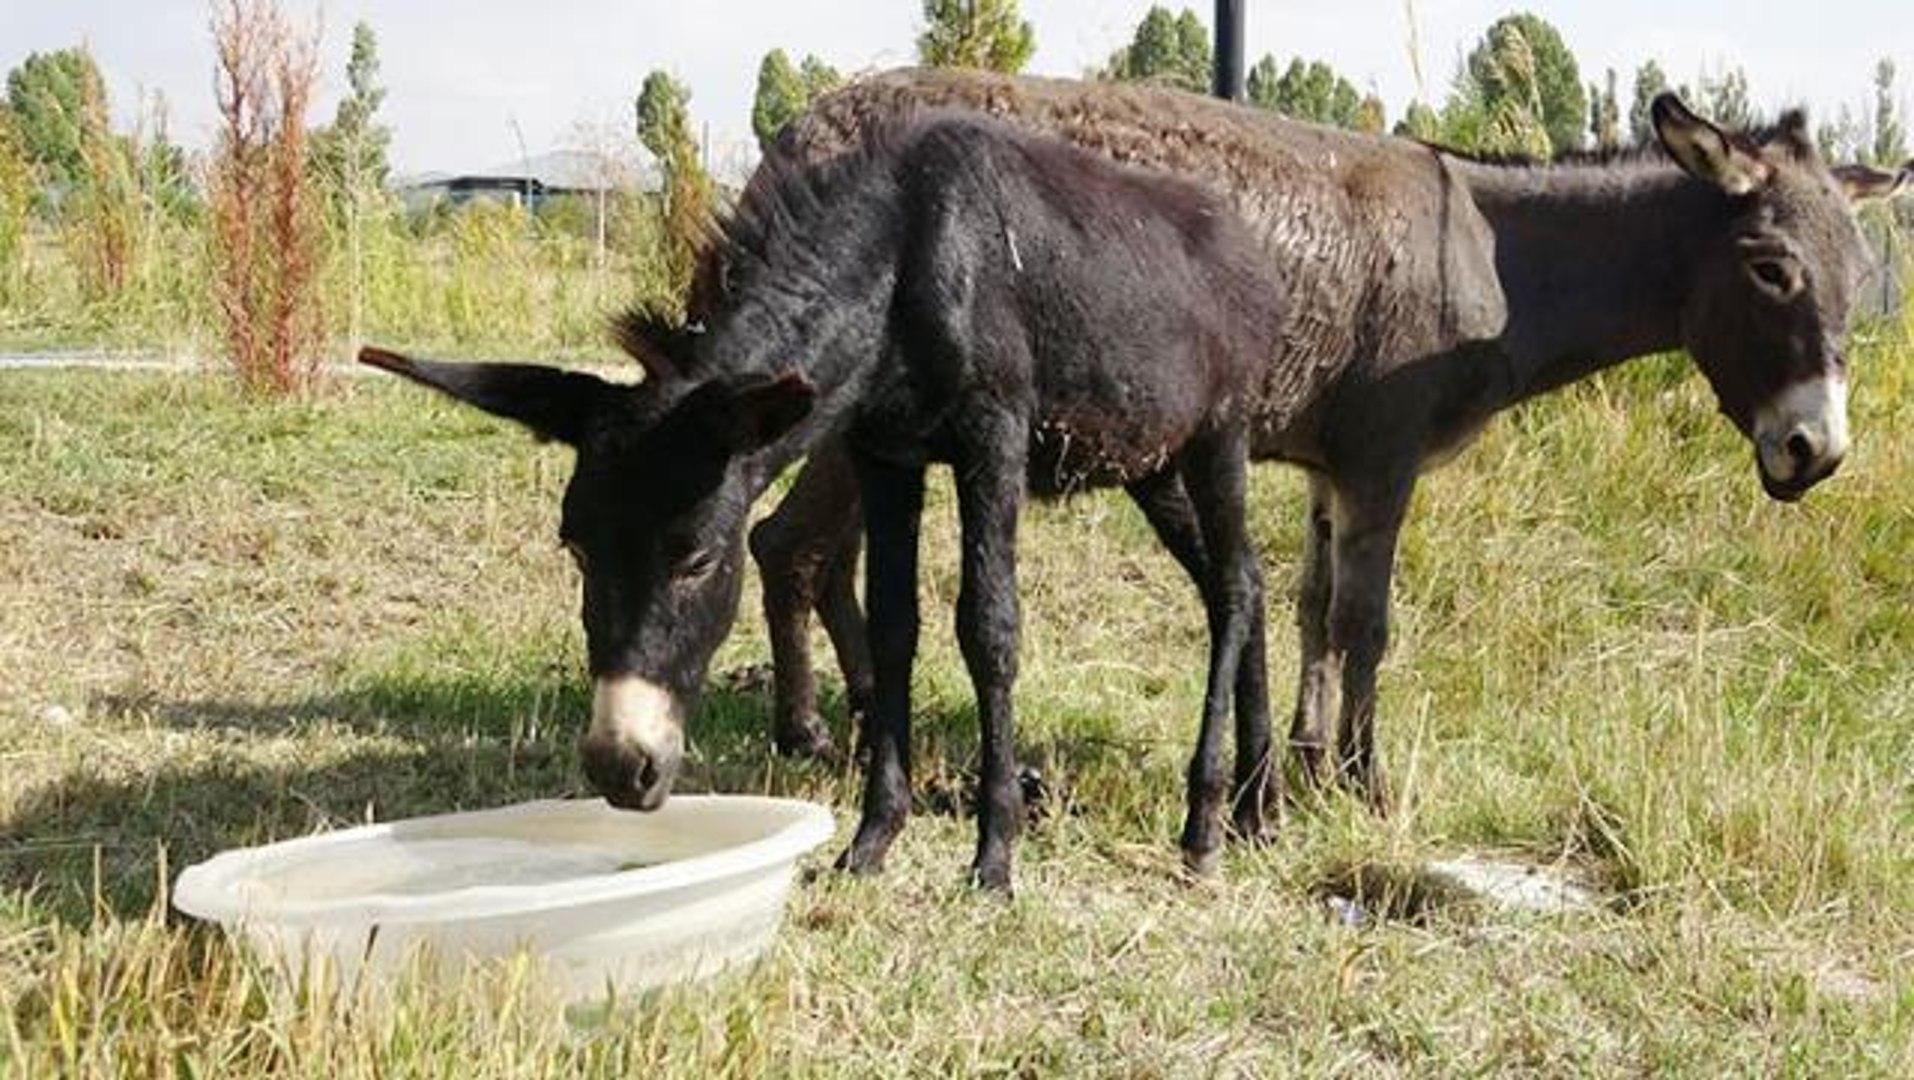 Bu da eşek görünümlü at! Türkiye'nin nadir bilinen melez hayvanı Bardo,  bilgi yarışmalarının gözde sorusu oldu - Dailymotion Video